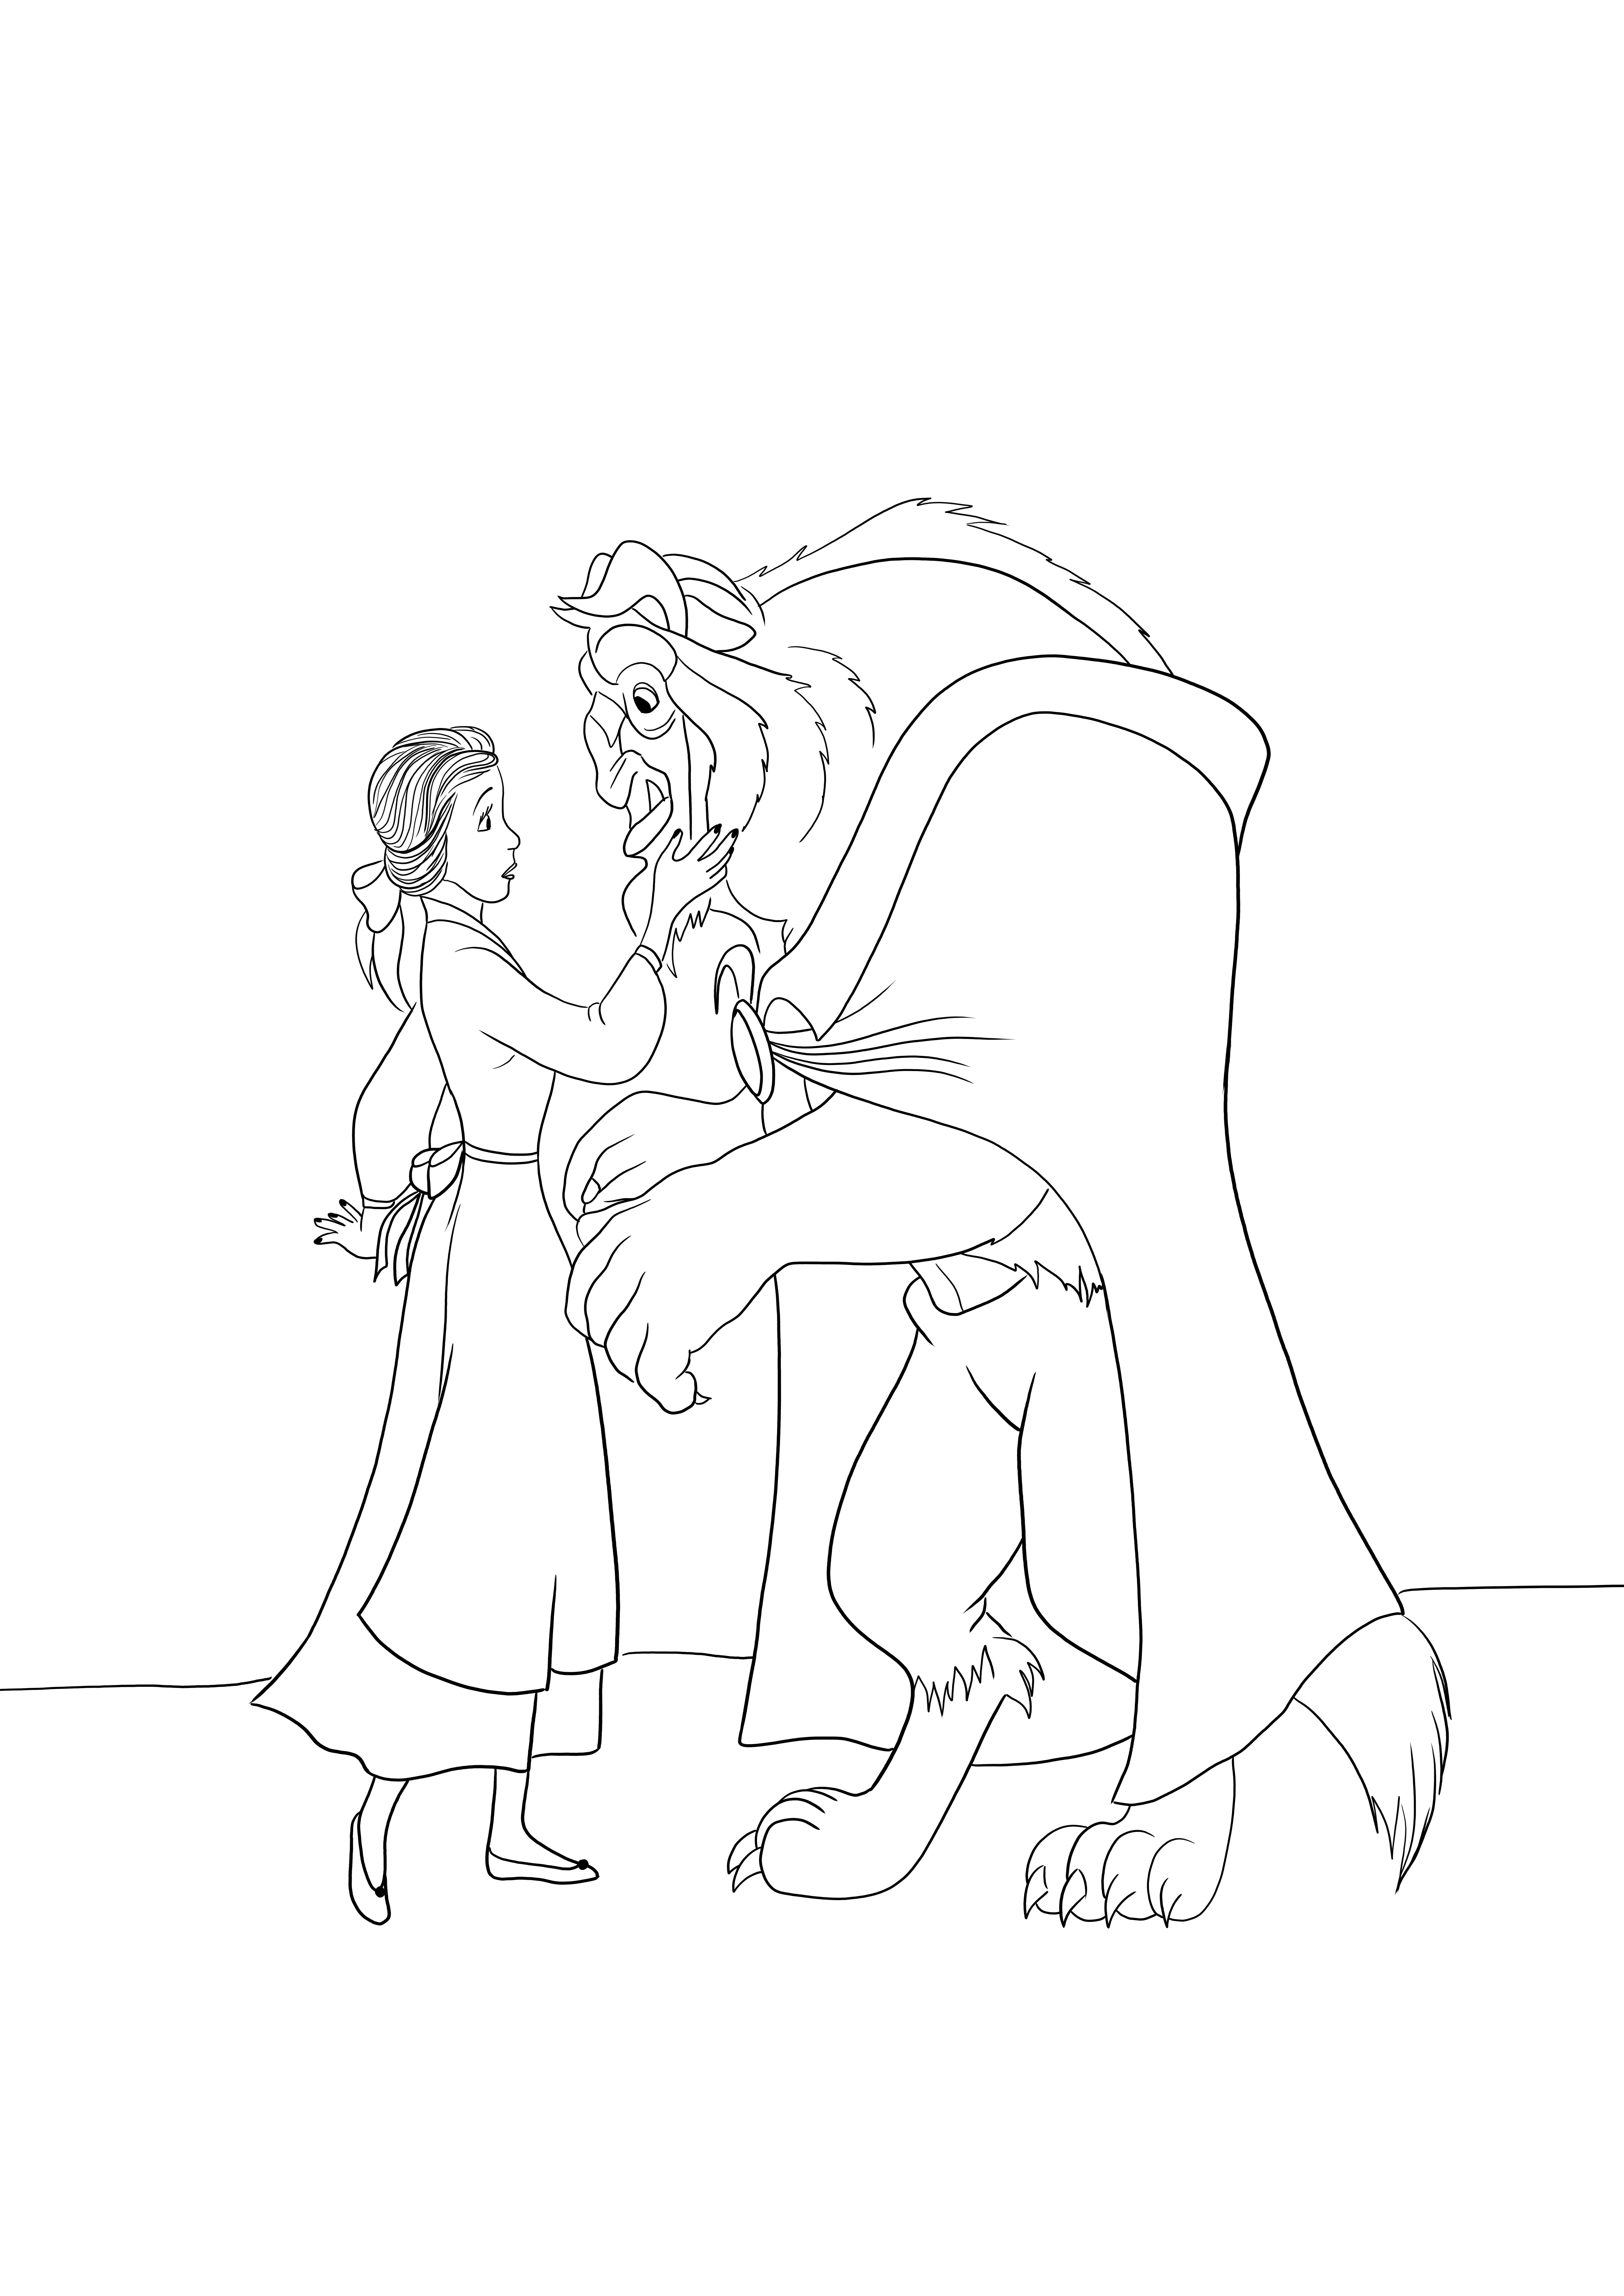 Gambar mewarnai Disney Princess Belle and the Beast untuk diunduh gratis